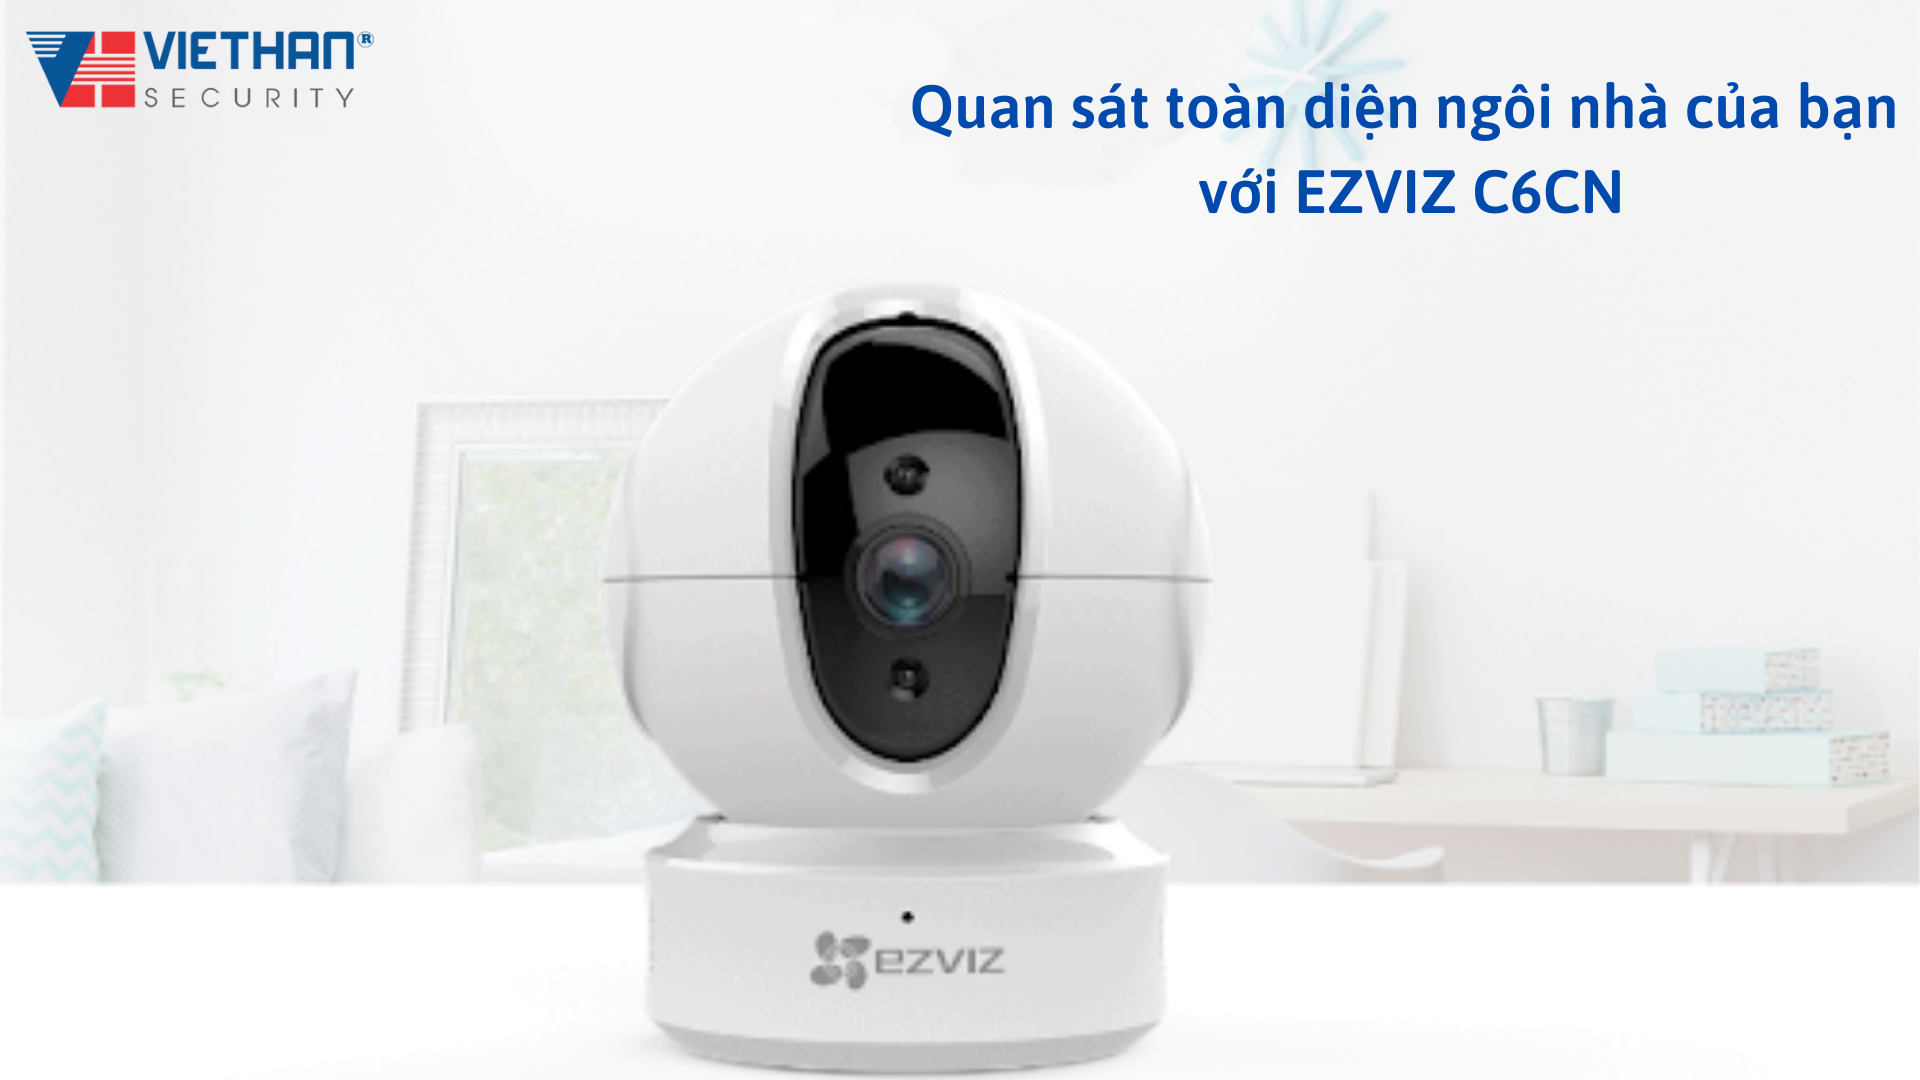 Quan sát ngôi nhà hiệu quả mà vẫn bảo vệ được quyền riêng tư với camera wifi EZVIZ C6CN